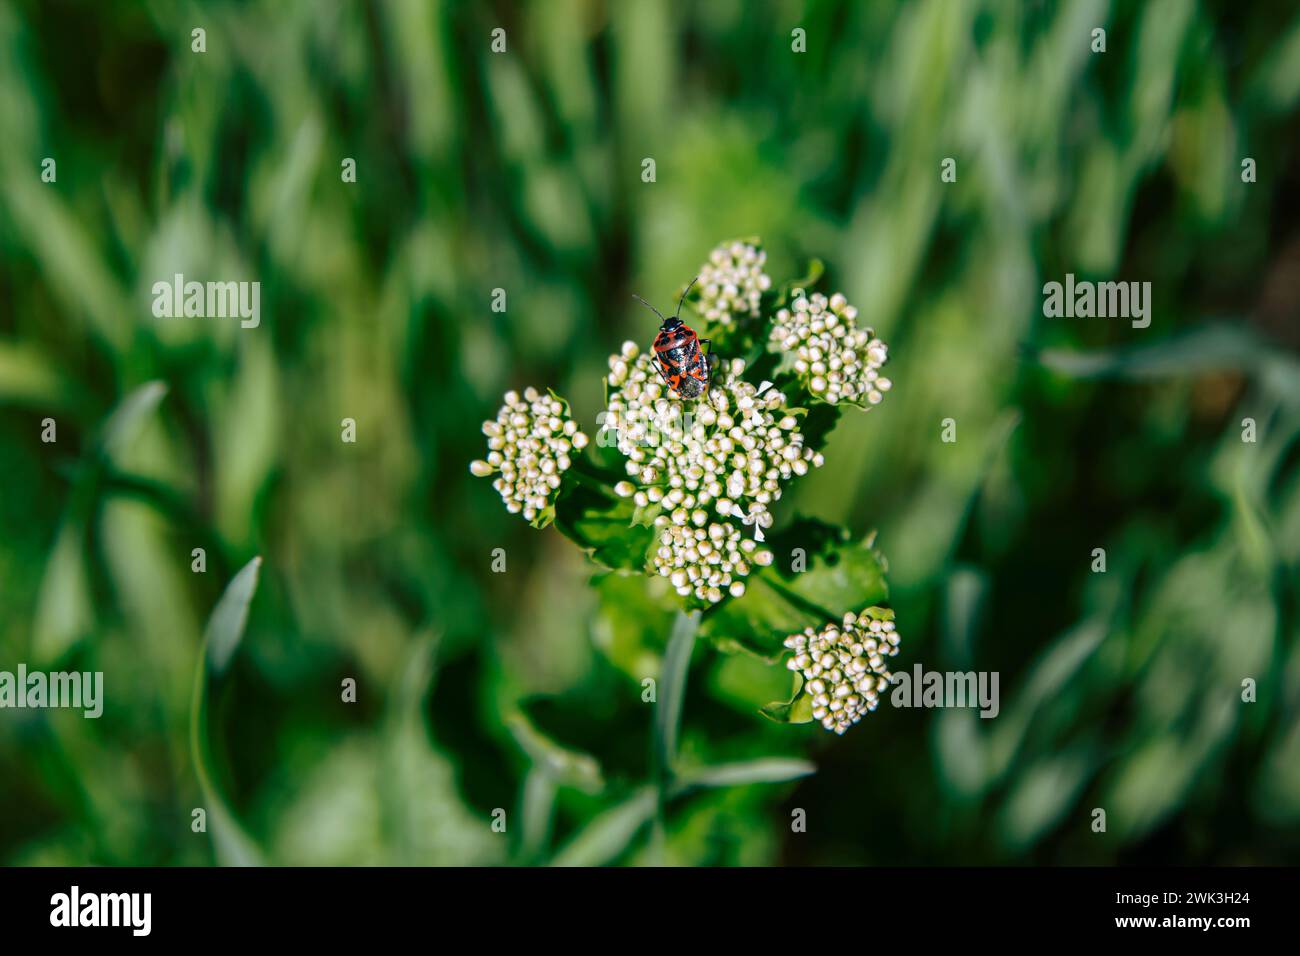 Closeup firebug -  Pyrrhocoris apterus – on a buds of white flower on the beautiful spring meadow Stock Photo